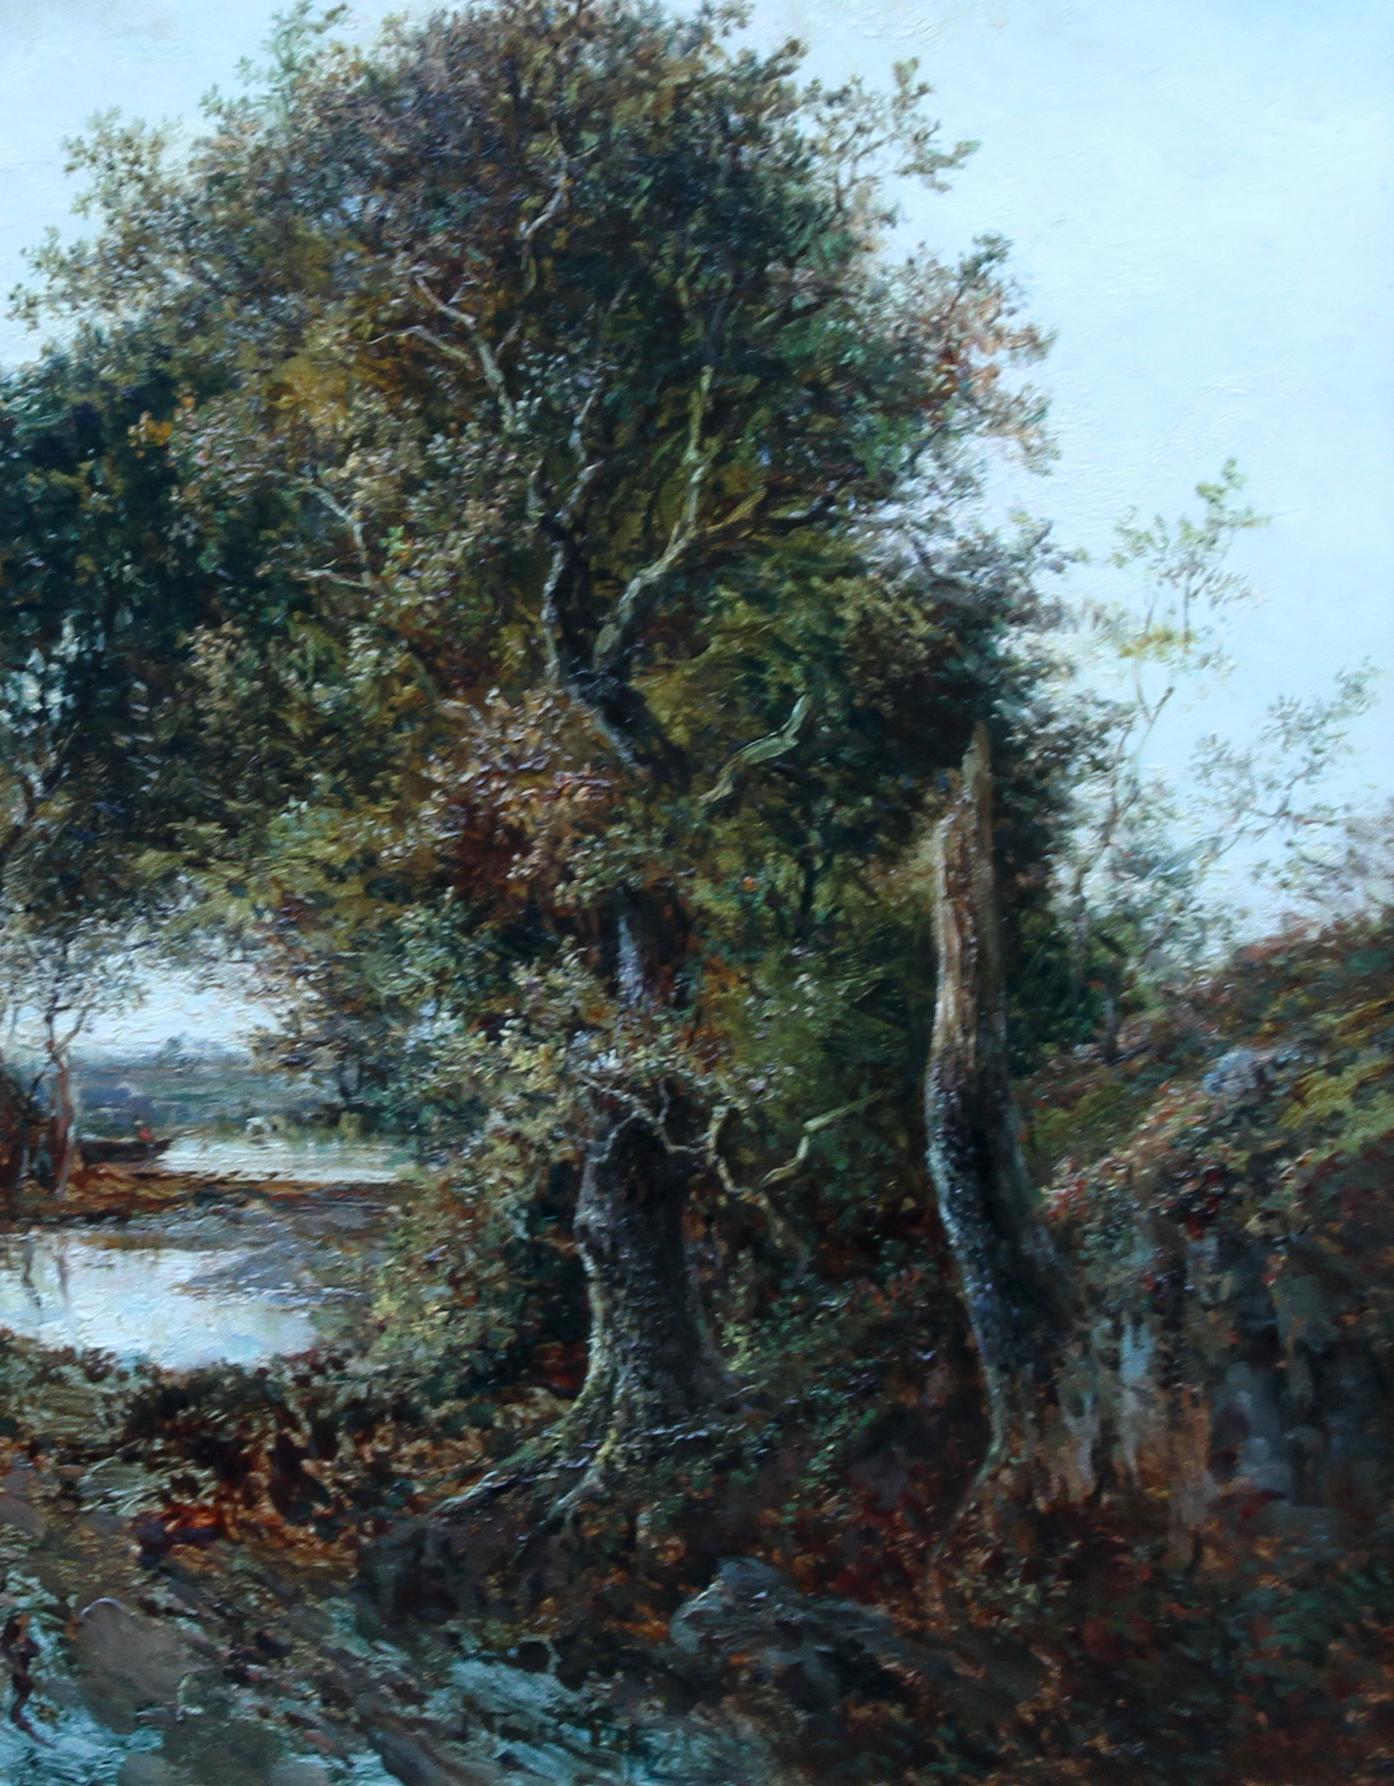 Une superbe huile sur toile de l'artiste britannique du XIXe siècle Joseph Artistics, basé à Birmingham. Il était un peintre de paysages rustiques réputé et il s'est spécialisé dans ce genre de scènes de paysages romantiques idéalisés. Ce paysage